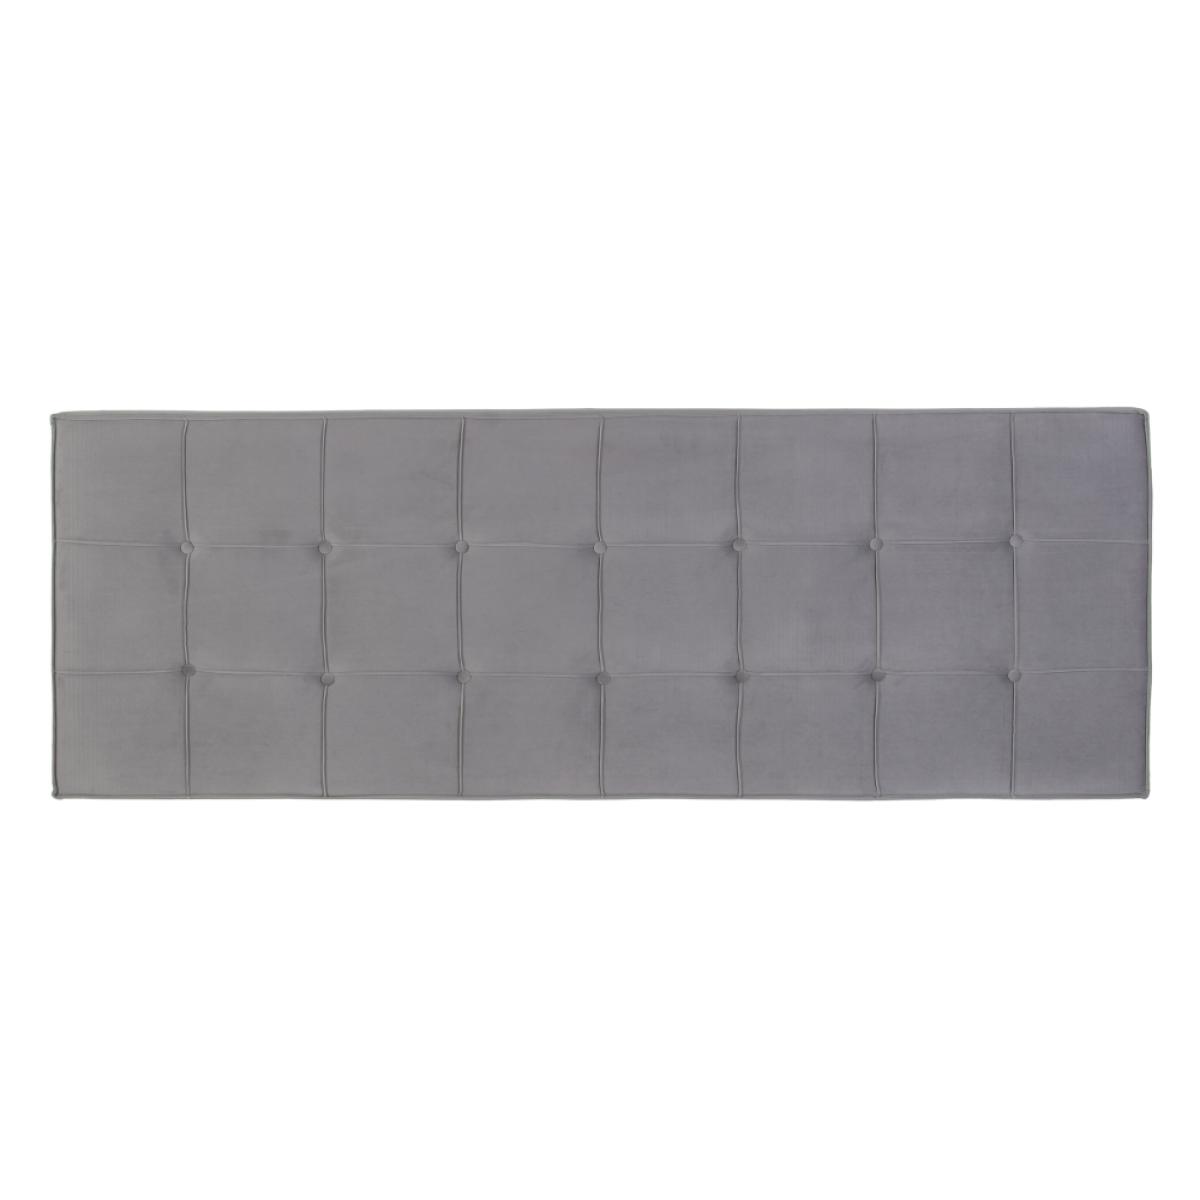 Cabecero gris tejido dormitorio 180 x 7 x 64 cm